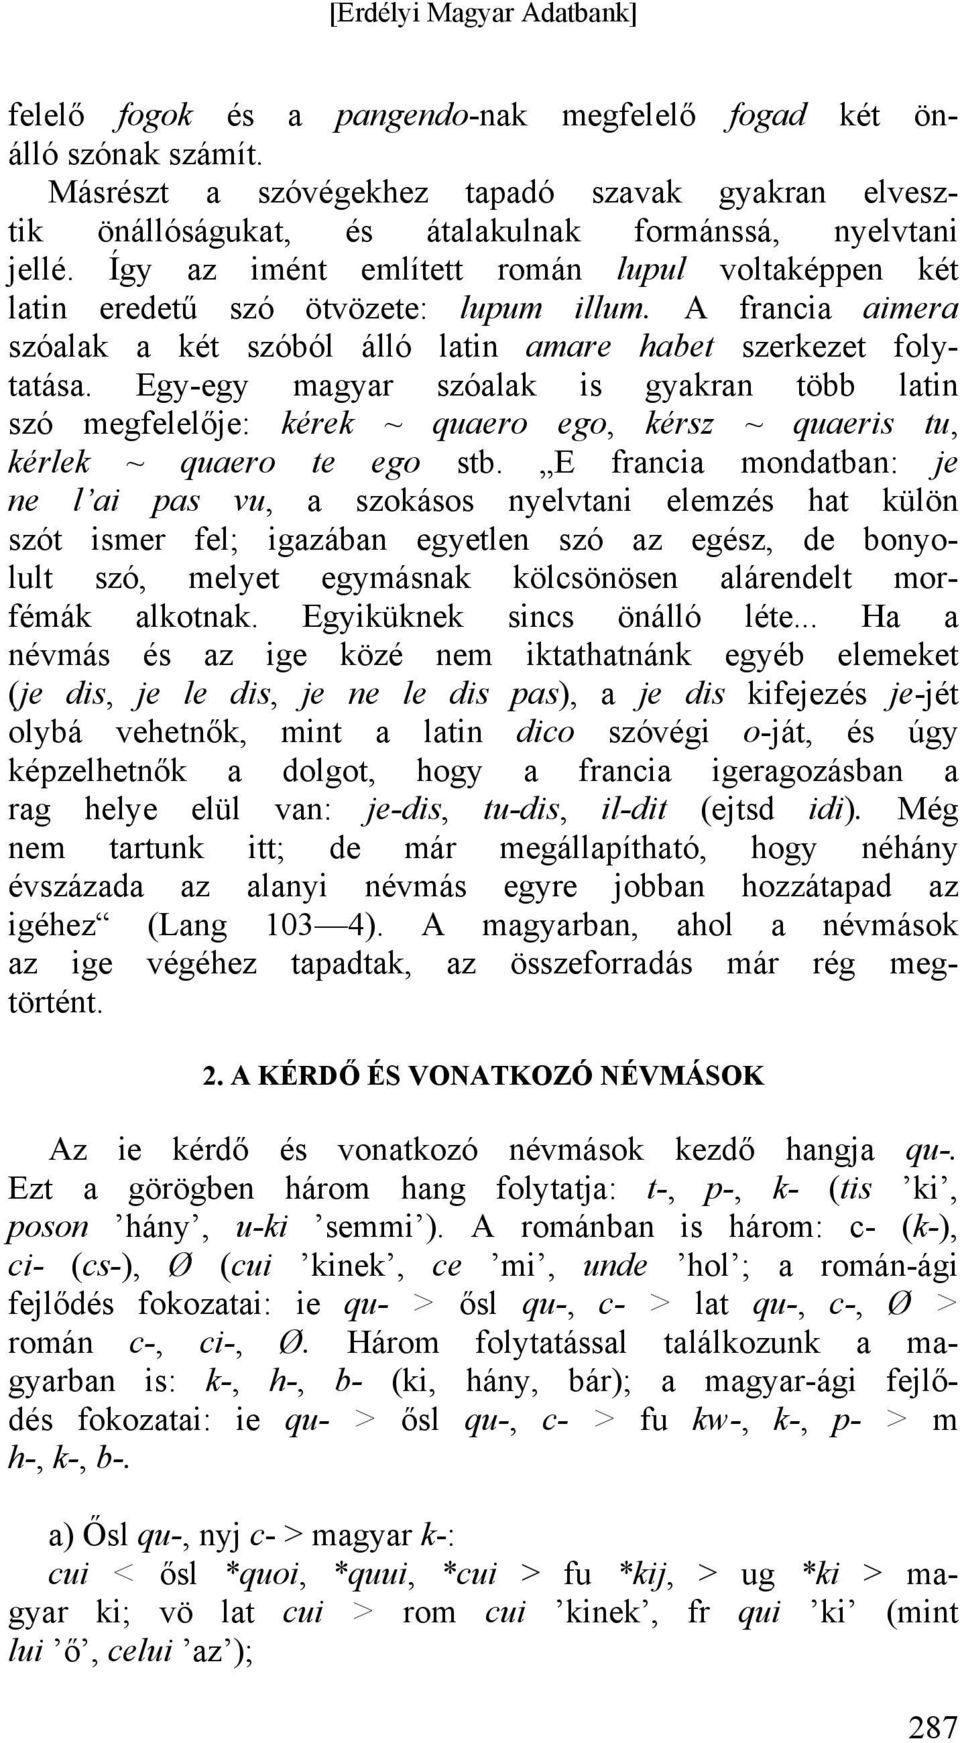 Egy-egy magyar szóalak is gyakran több latin szó megfelelője: kérek ~ quaero ego, kérsz ~ quaeris tu, kérlek ~ quaero te ego stb.